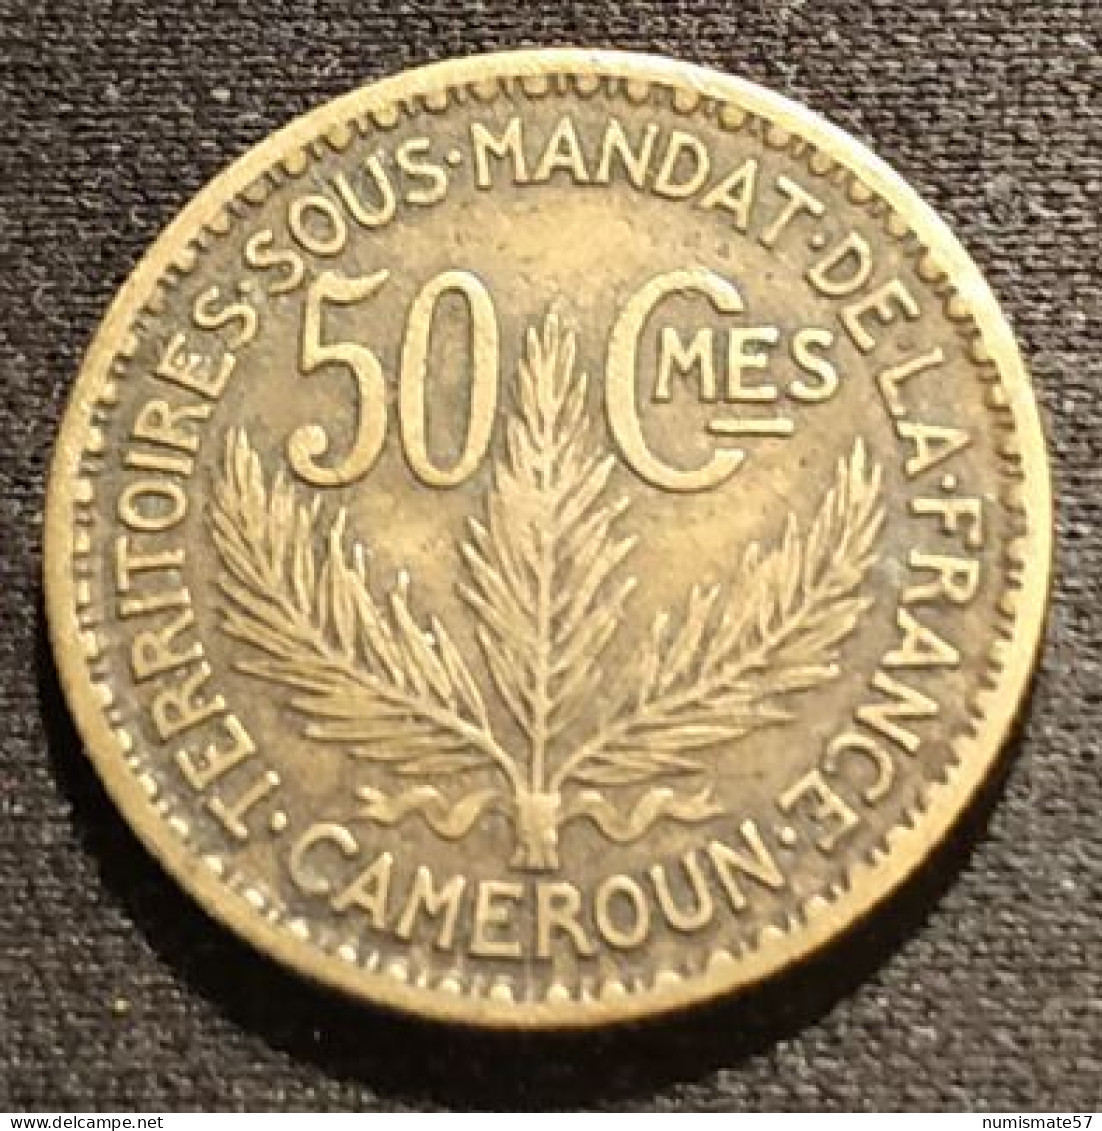 RARE - CAMEROUN - 50 CENTIMES 1925 - KM 1 - TERRITOIRES SOUS MANDAT DE LA FRANCE - Cameroun